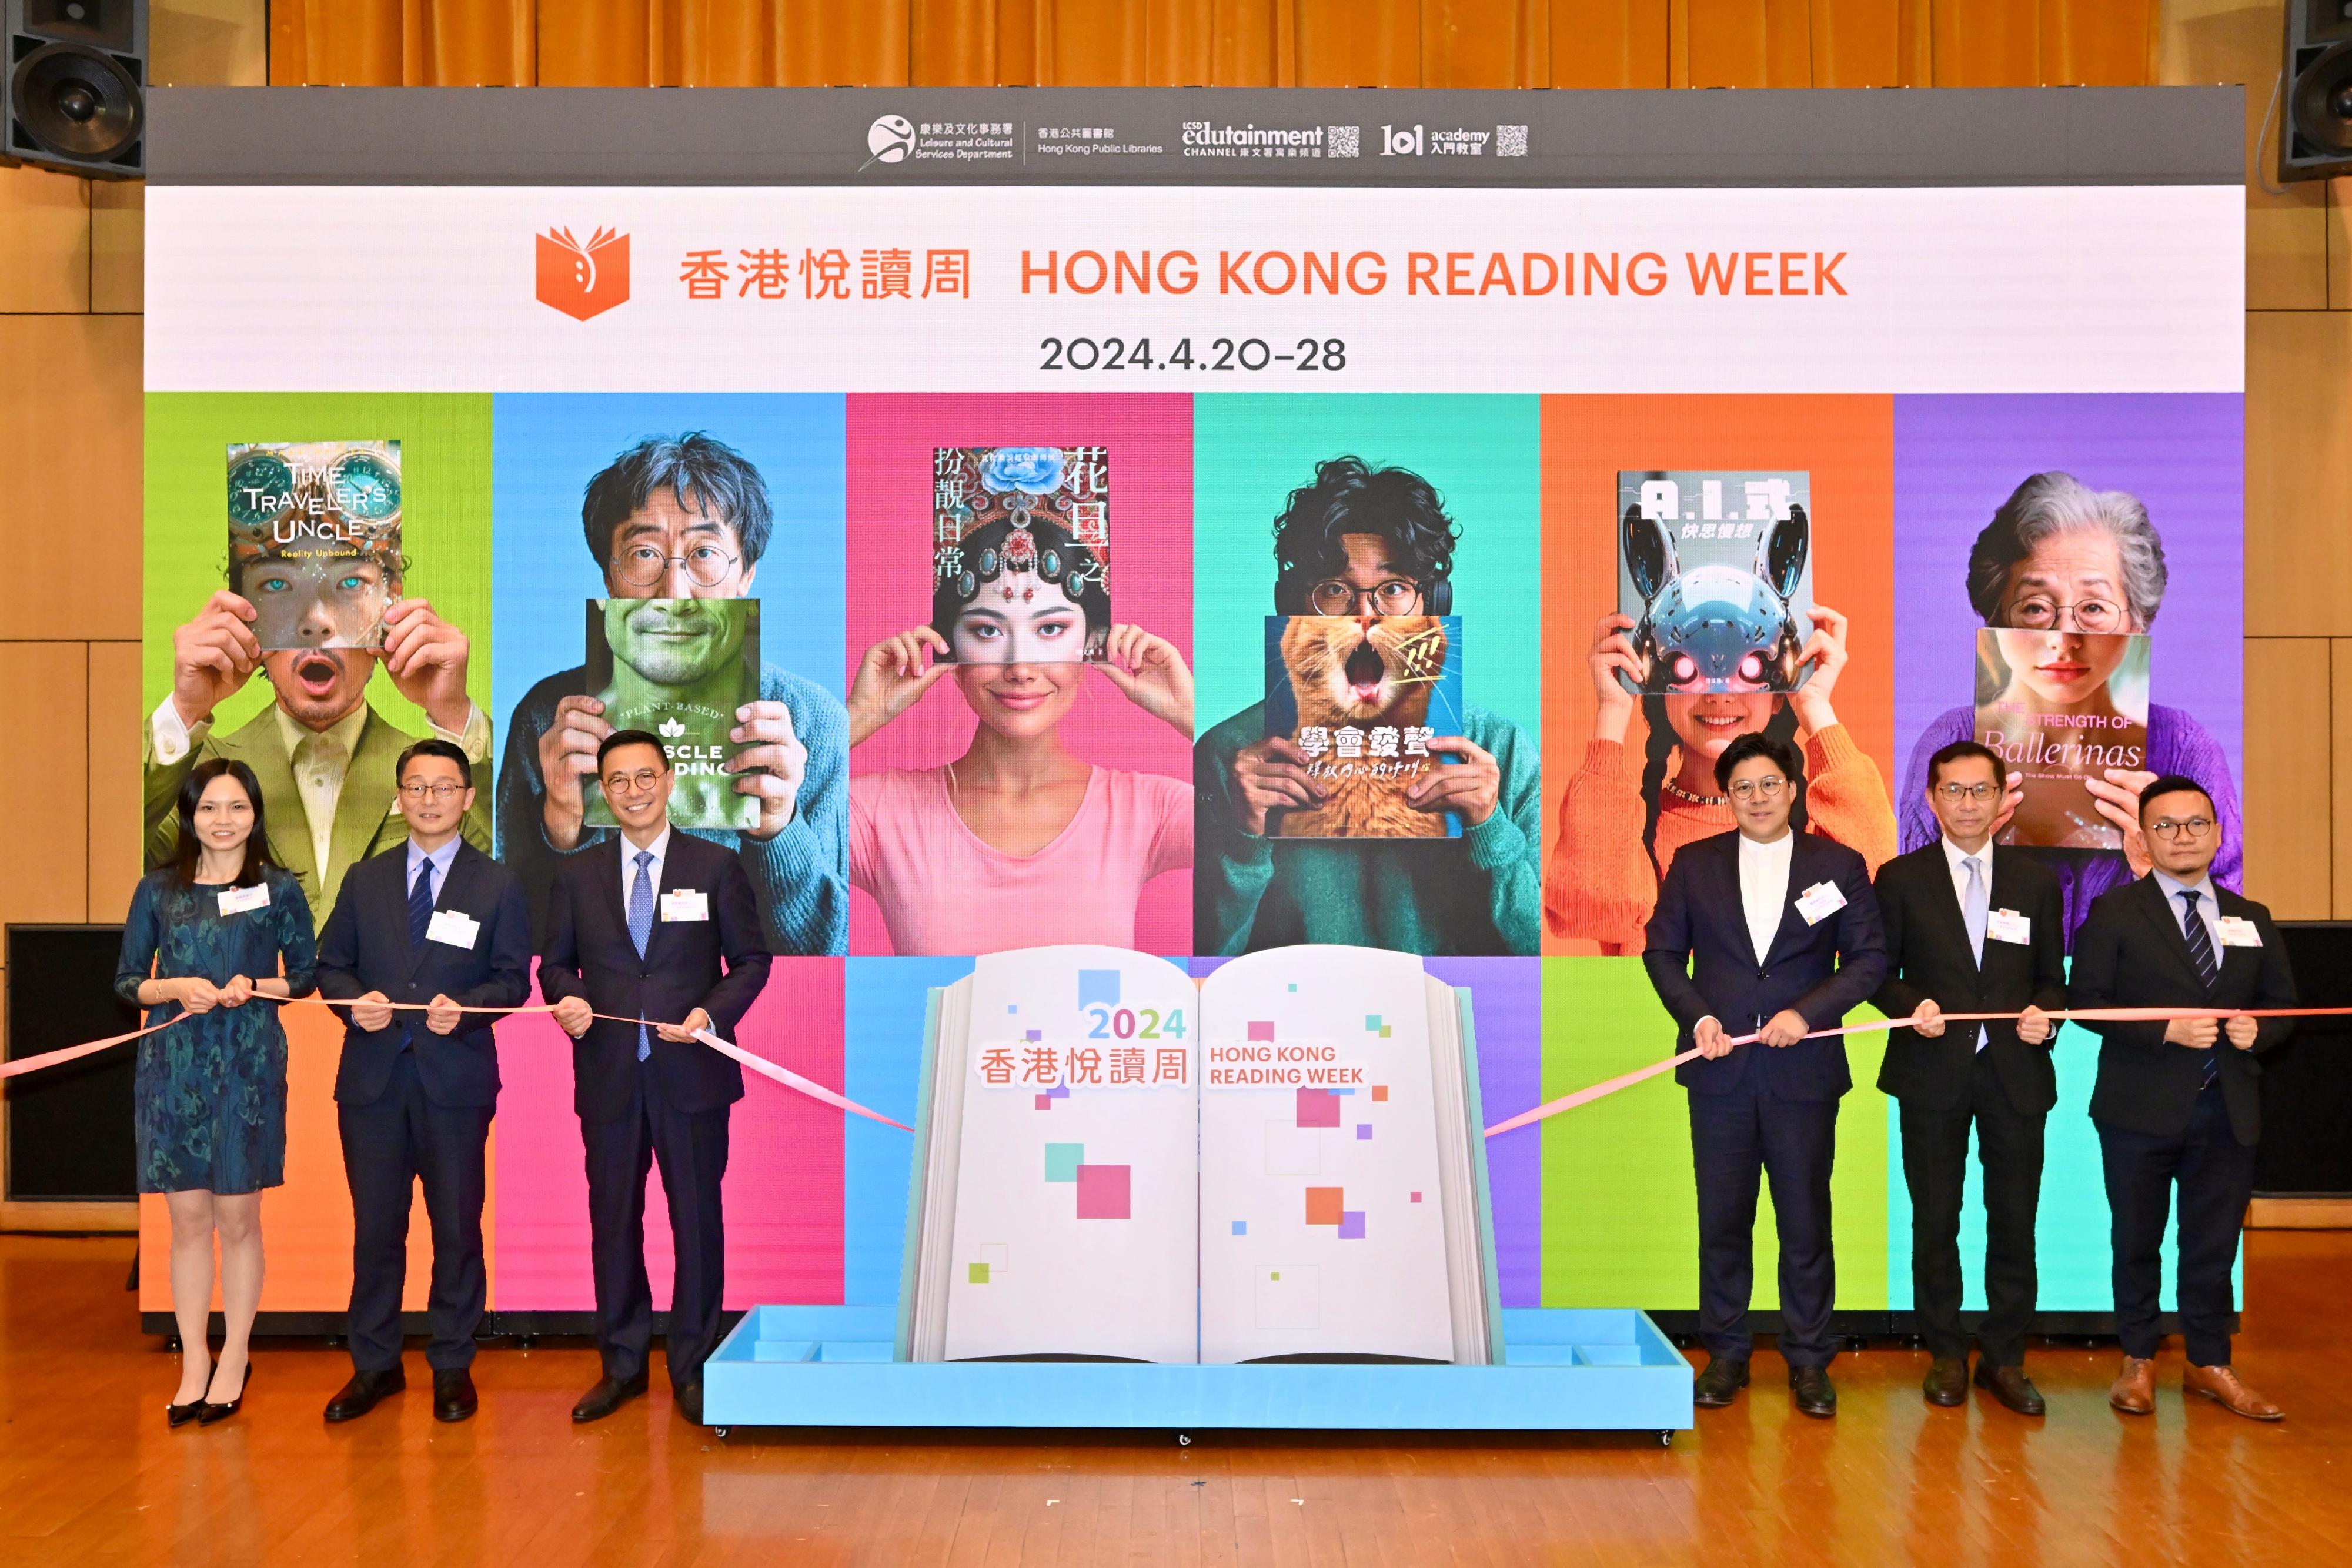 为响应今年四月二十三日首度举办的「香港全民阅读日」，康乐及文化事务署（康文署）香港公共图书馆与不同持份者合作，于四月二十日至二十八日举办第一届「香港悦读周」。图示文化体育及旅游局局长杨润雄（左三）、立法会议员霍启刚（右三）、康文署署长刘明光（左二）、副广播处长卫懿欣（左一）、署理创意香港总监麦圣希（右一）和香港出版总会会长李家驹博士（右二）今日（四月九日）主持「香港悦读周」启动礼。